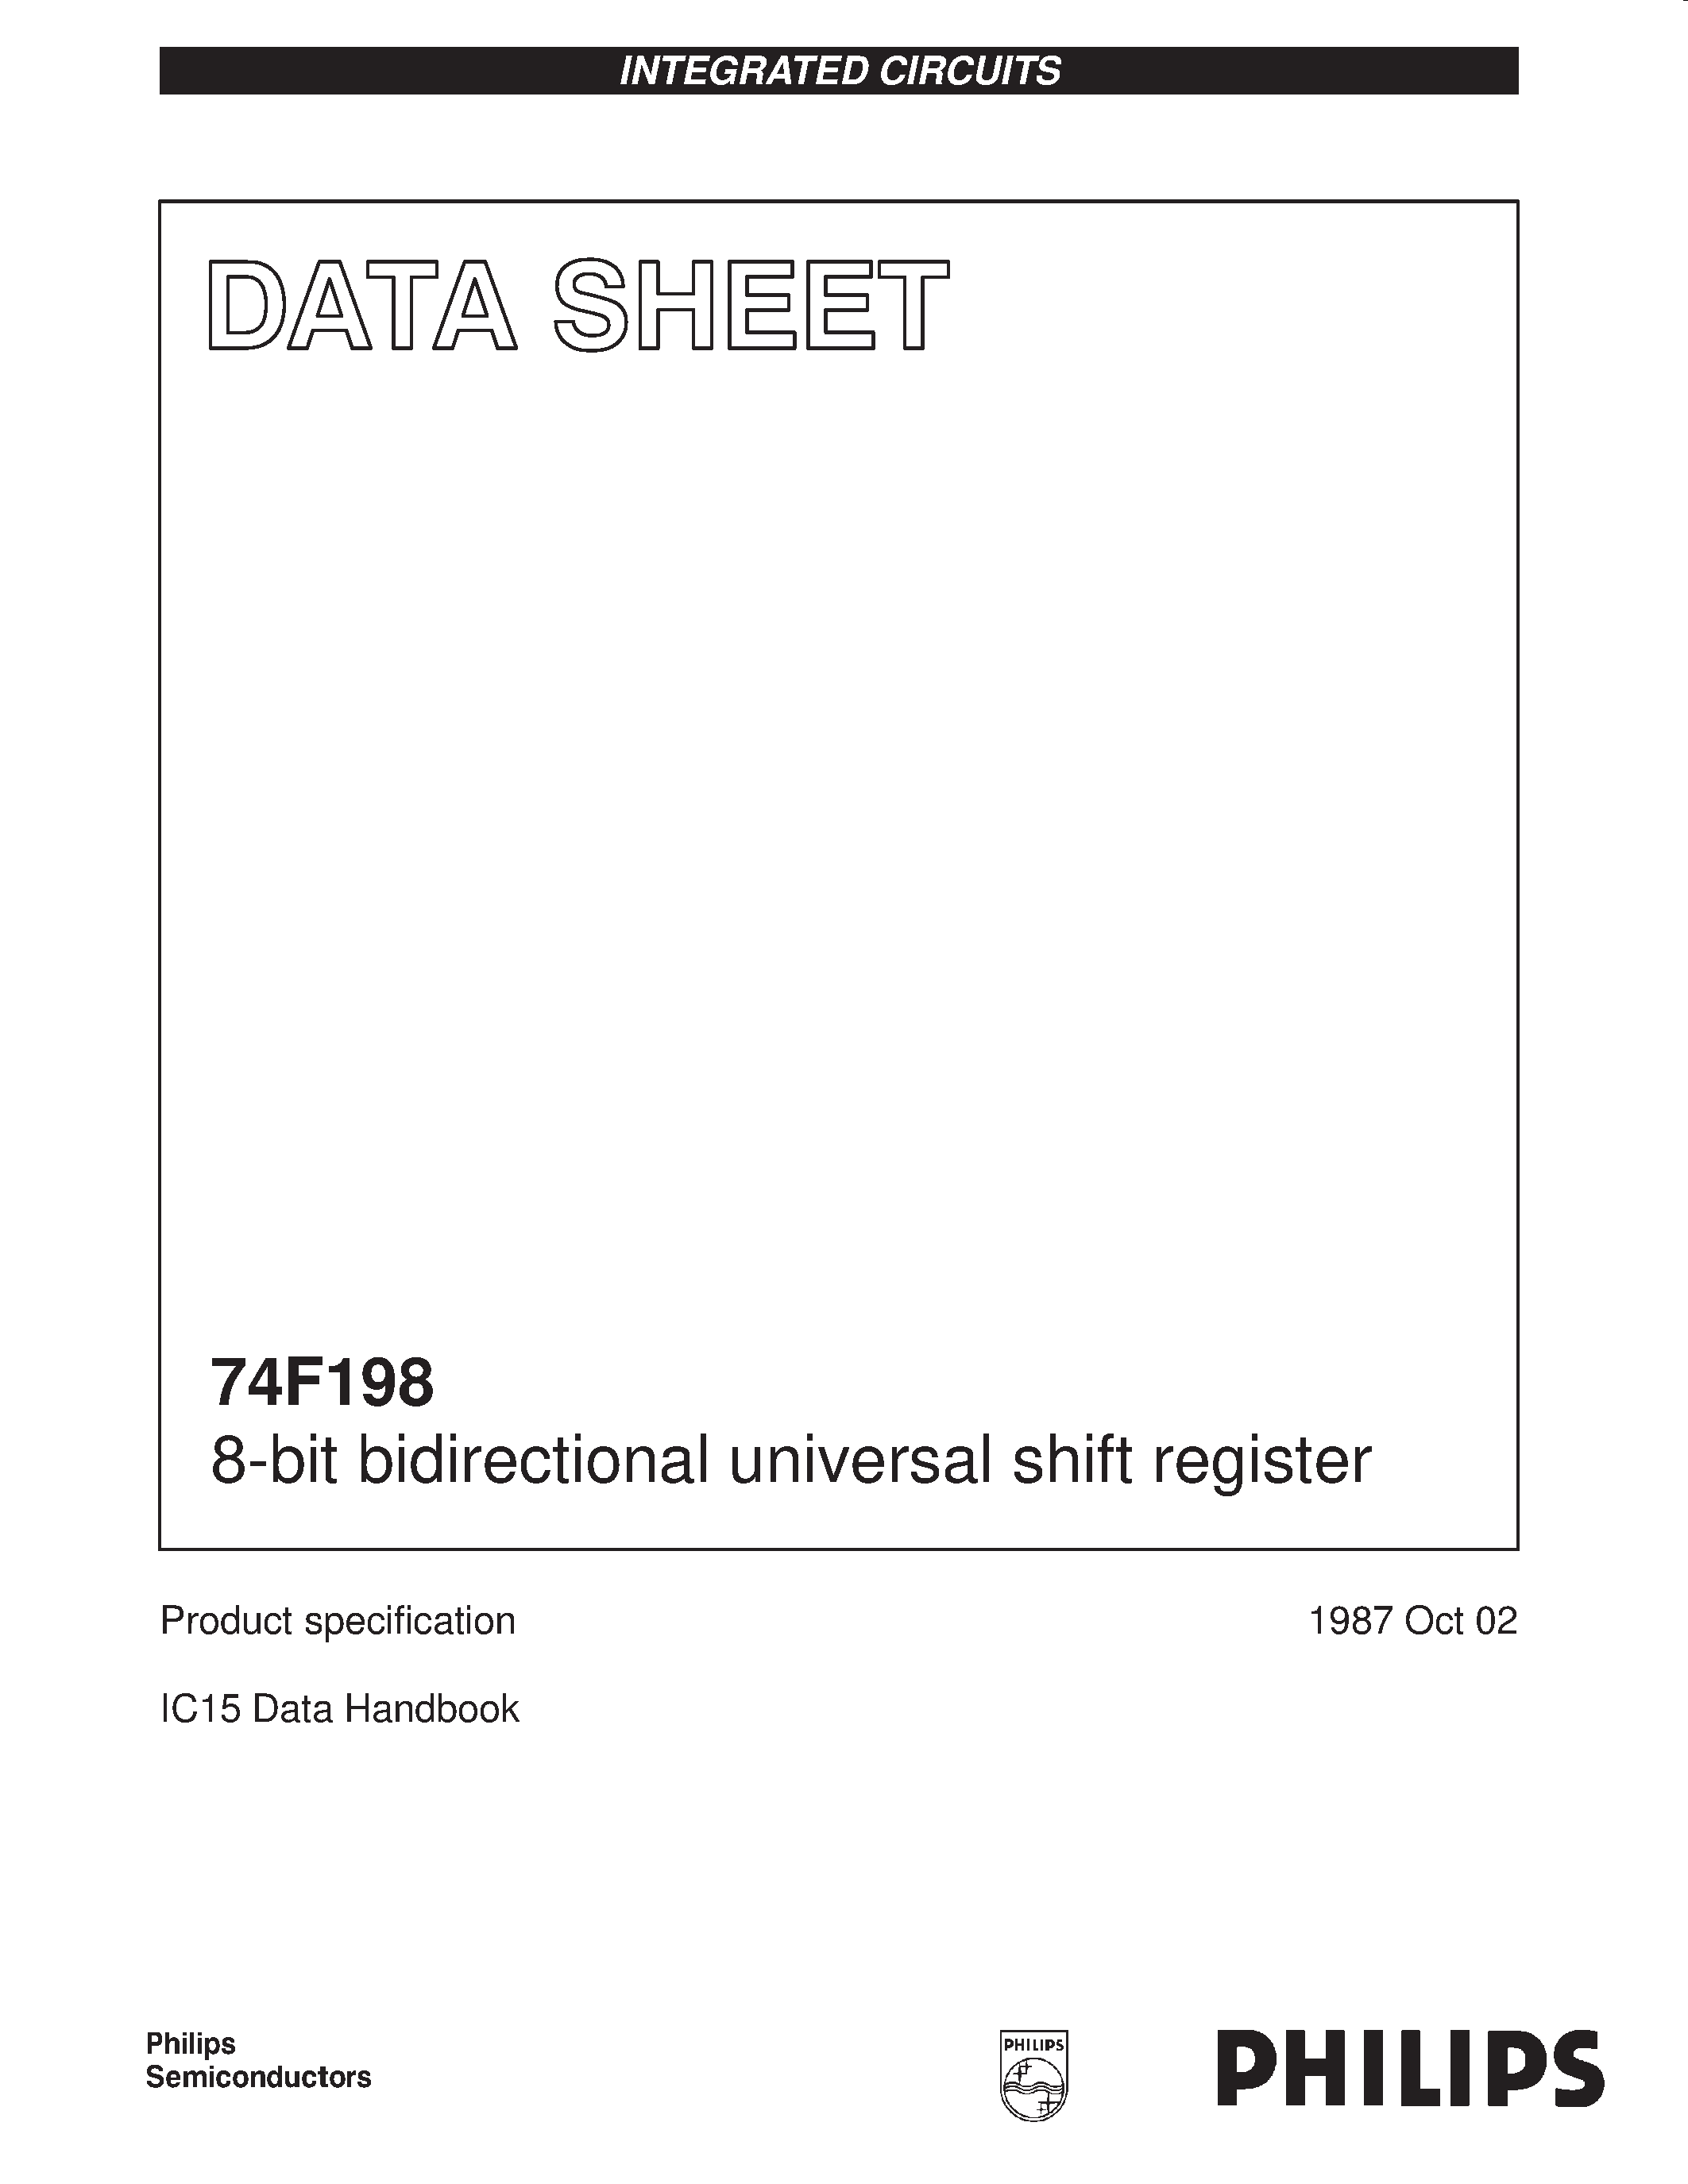 Даташит 74F198 - 8-bit bidirectional universal shift register страница 1